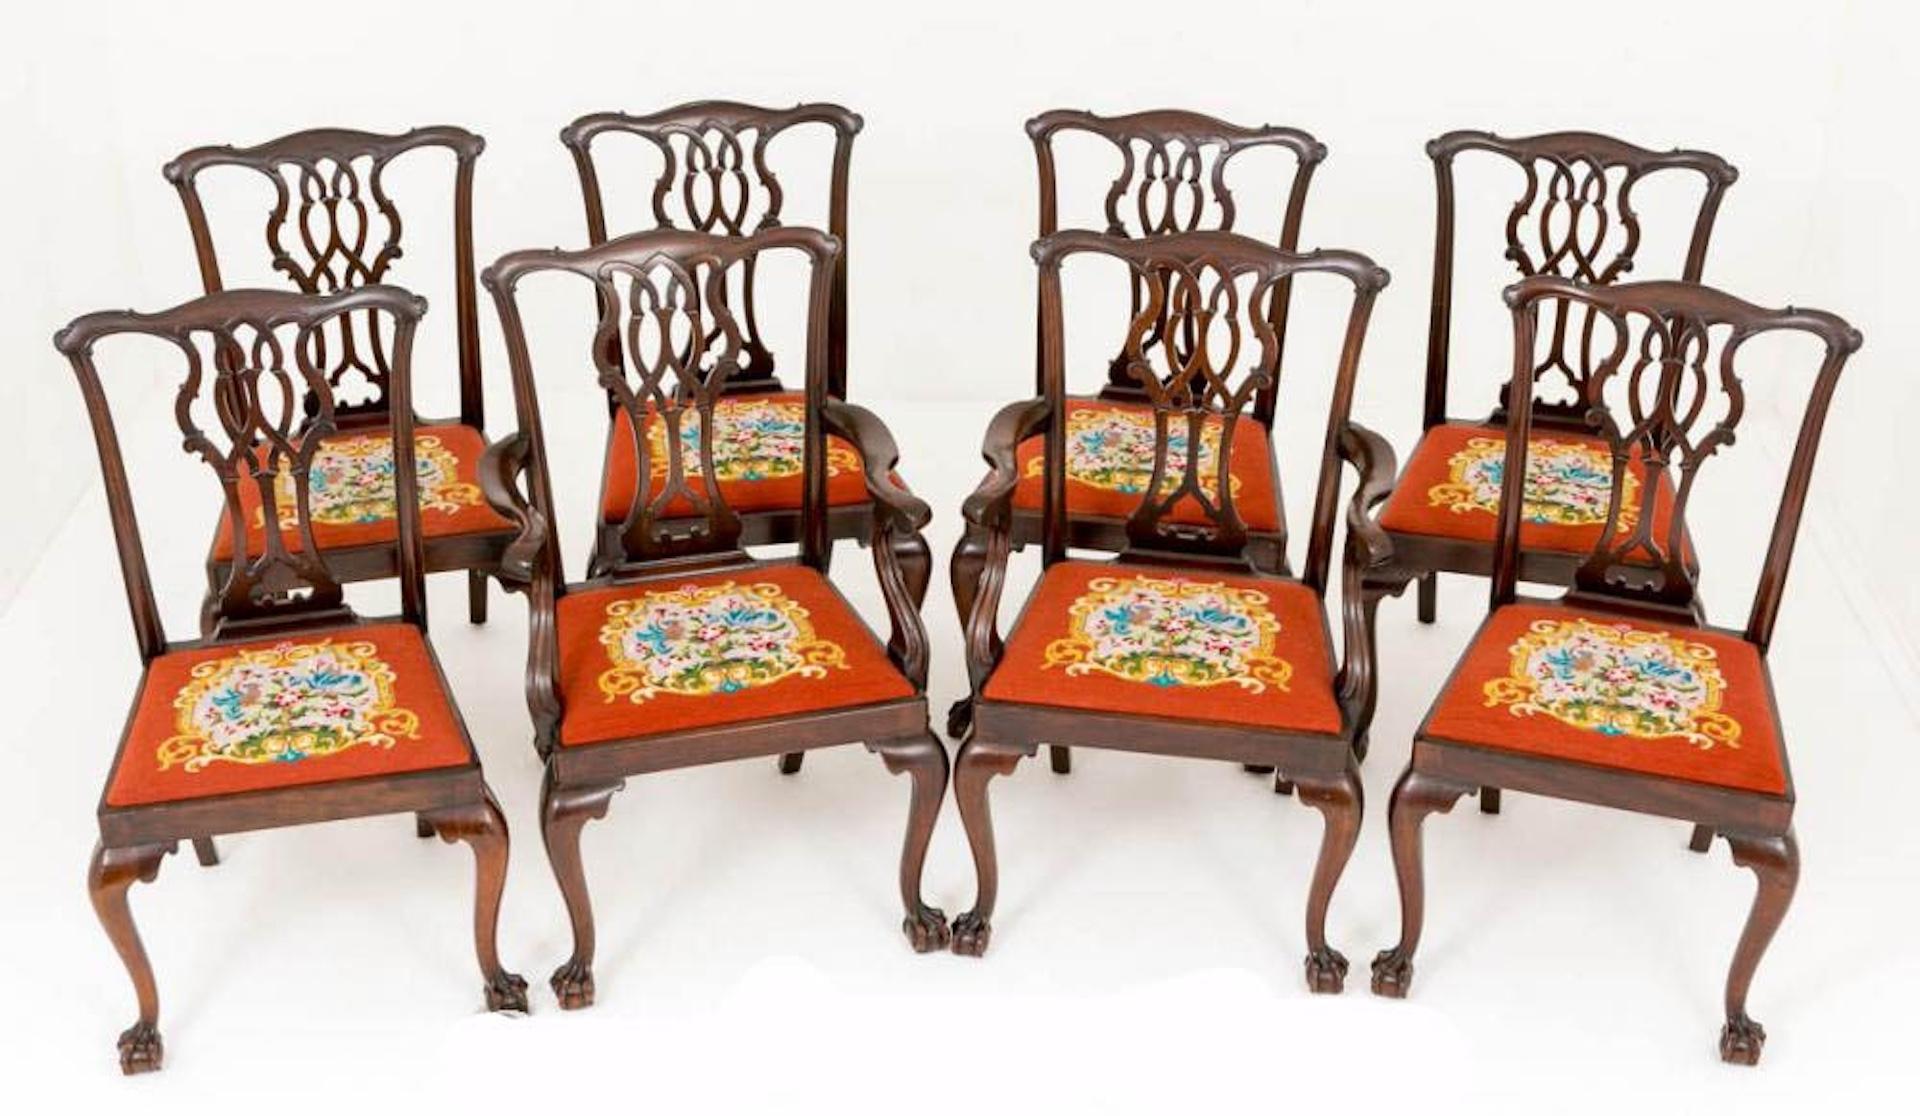 Bon ensemble de 8 (6+2) chaises de salle à manger en acajou de style Chippendale.
Circa 1890
Chaque chaise repose sur des pieds balayés avec des pieds en boule et griffe audacieusement sculptés.
Ces fauteuils conservent leurs sièges à aiguilles